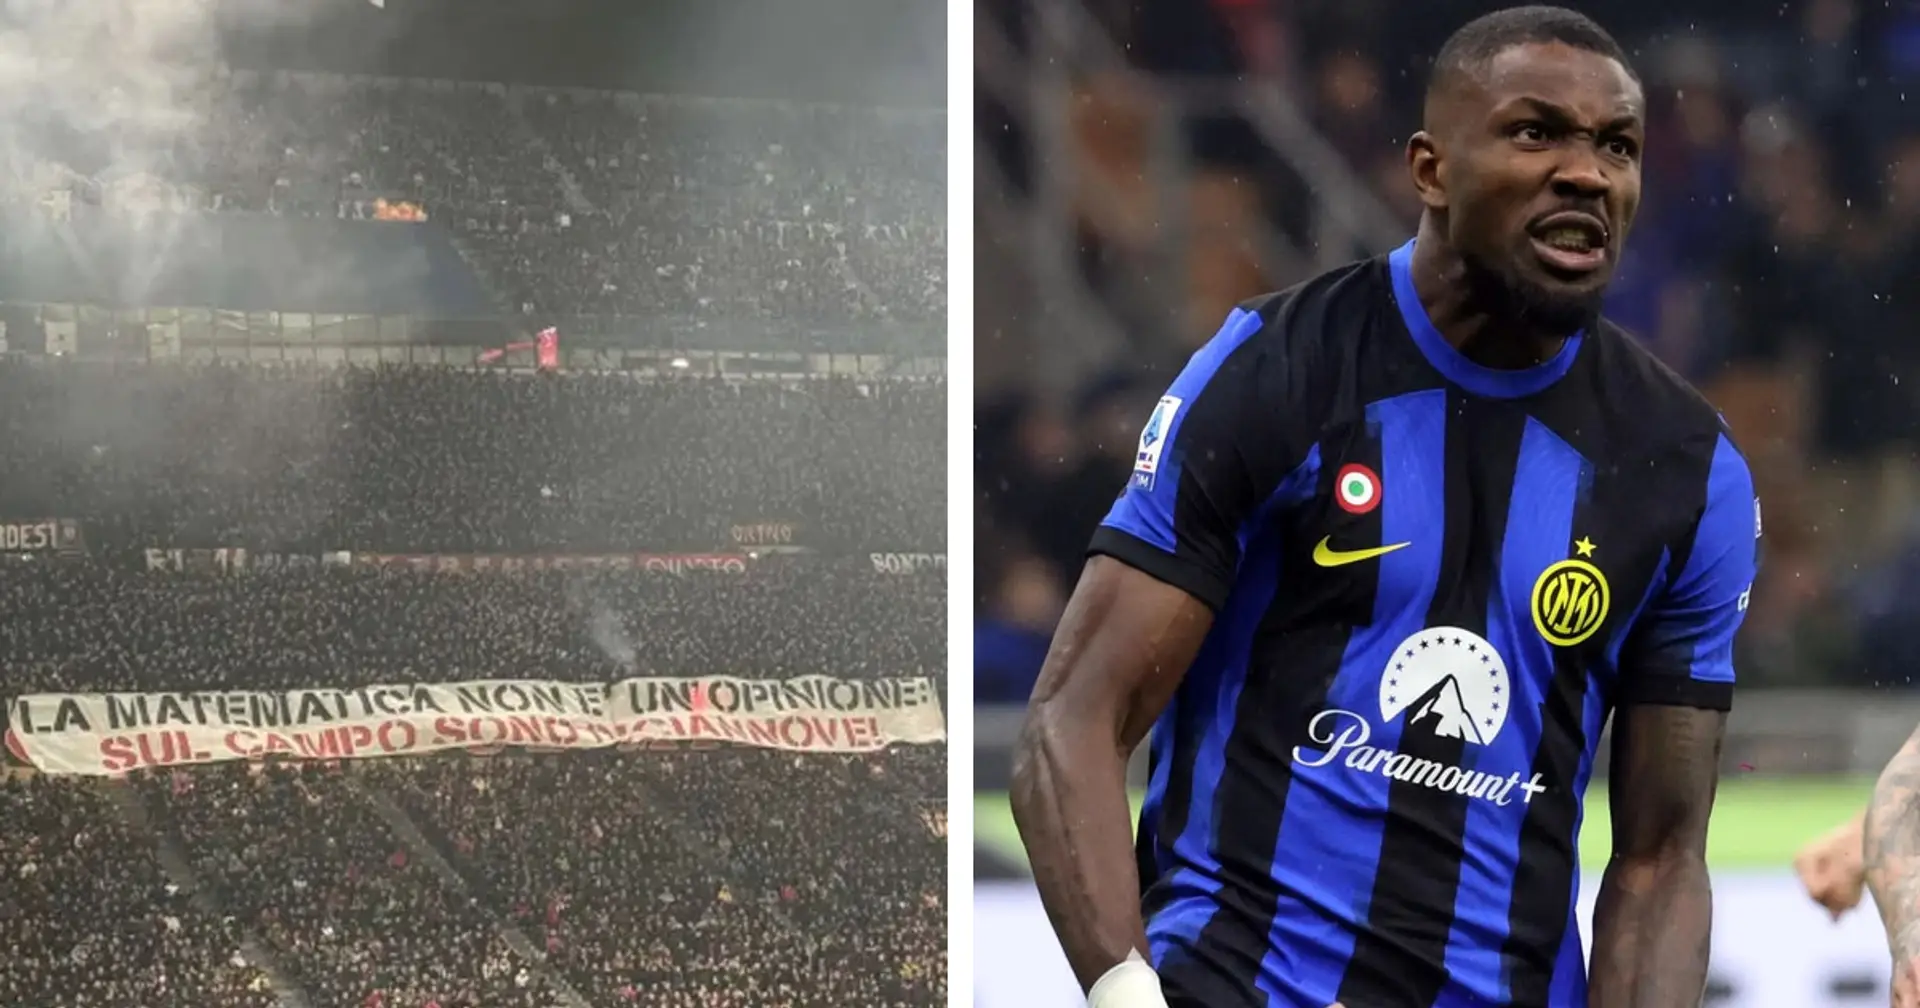 La Curva del Milan provoca: "Sul campo sono diciannove". L'Inter risponde con 2 gol in 49'